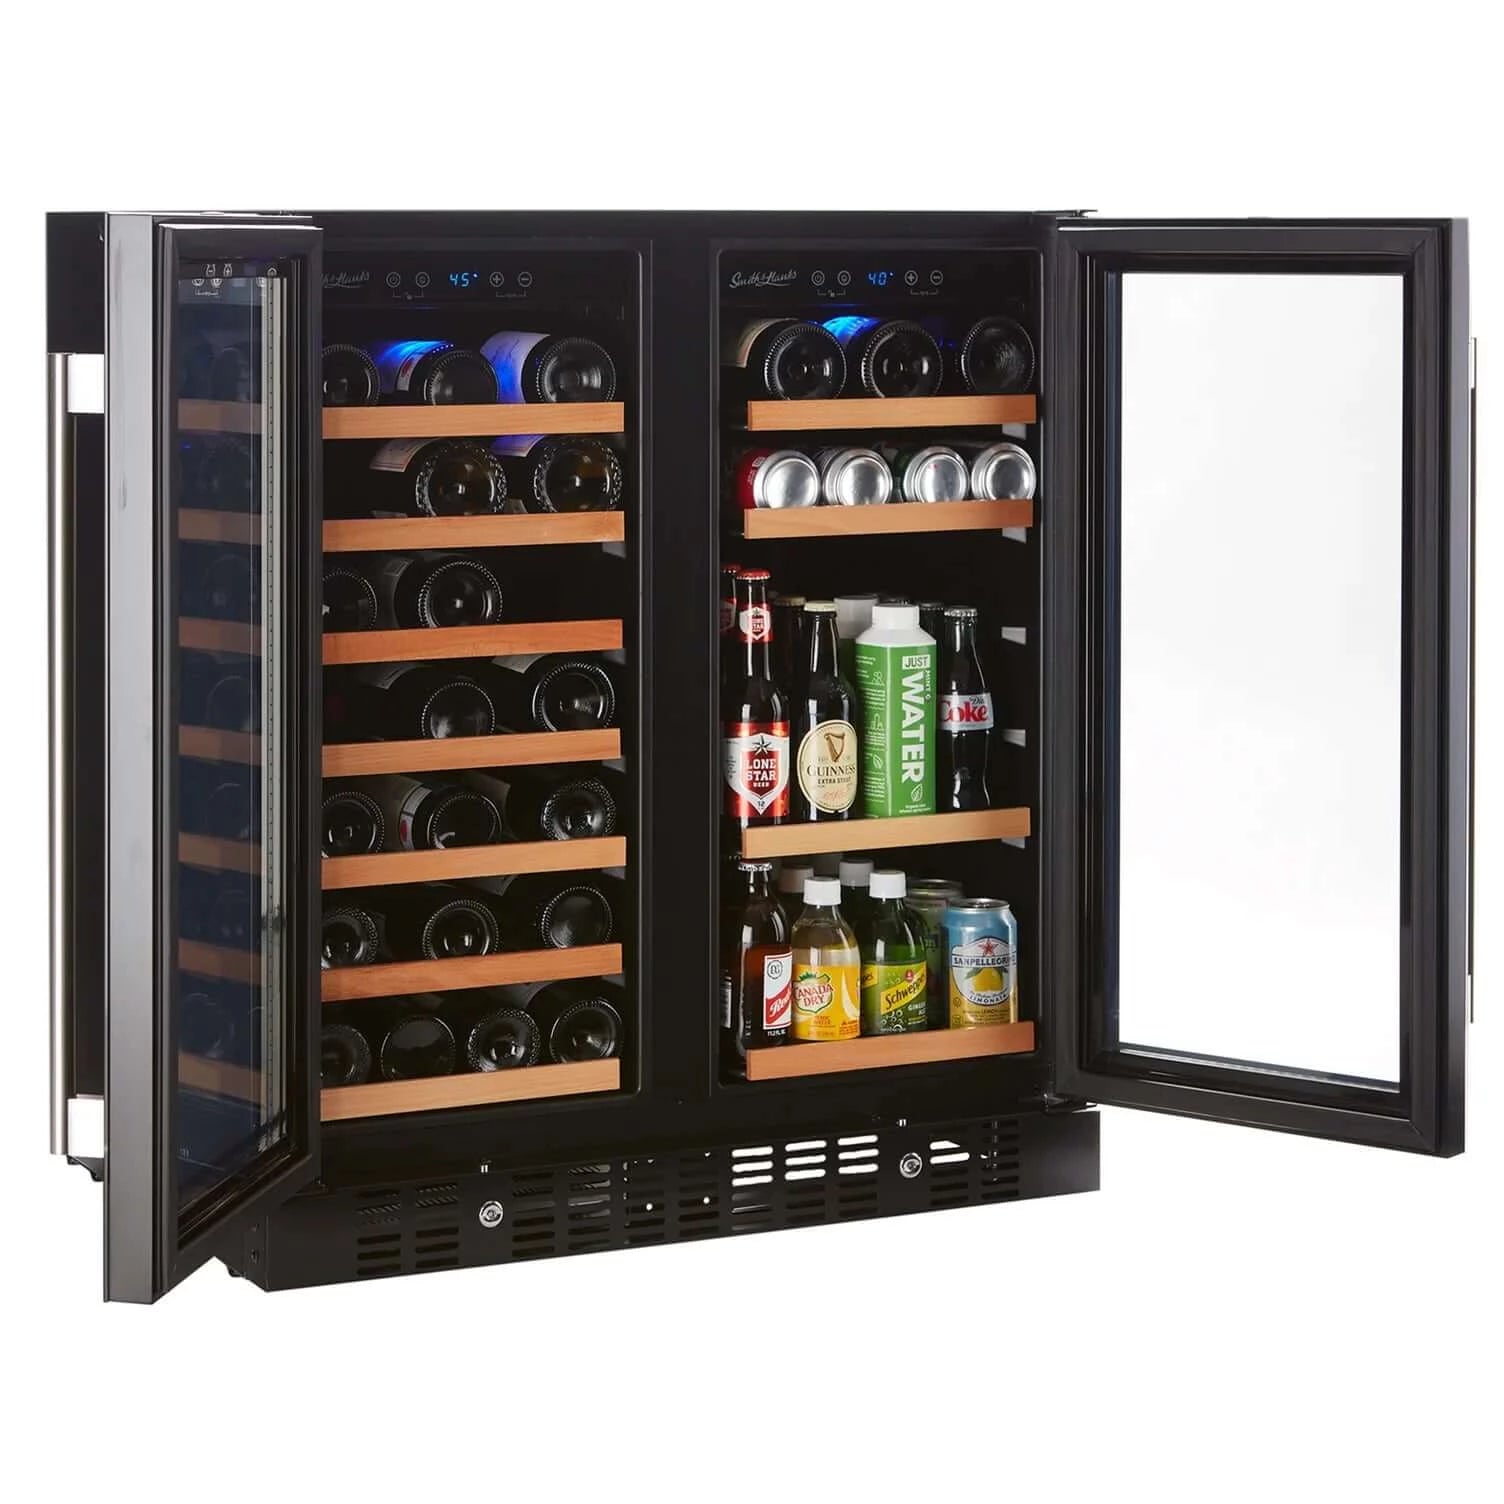 Smith & Hanks Wine & Beverage Cooler, Smoked Black Glass Door